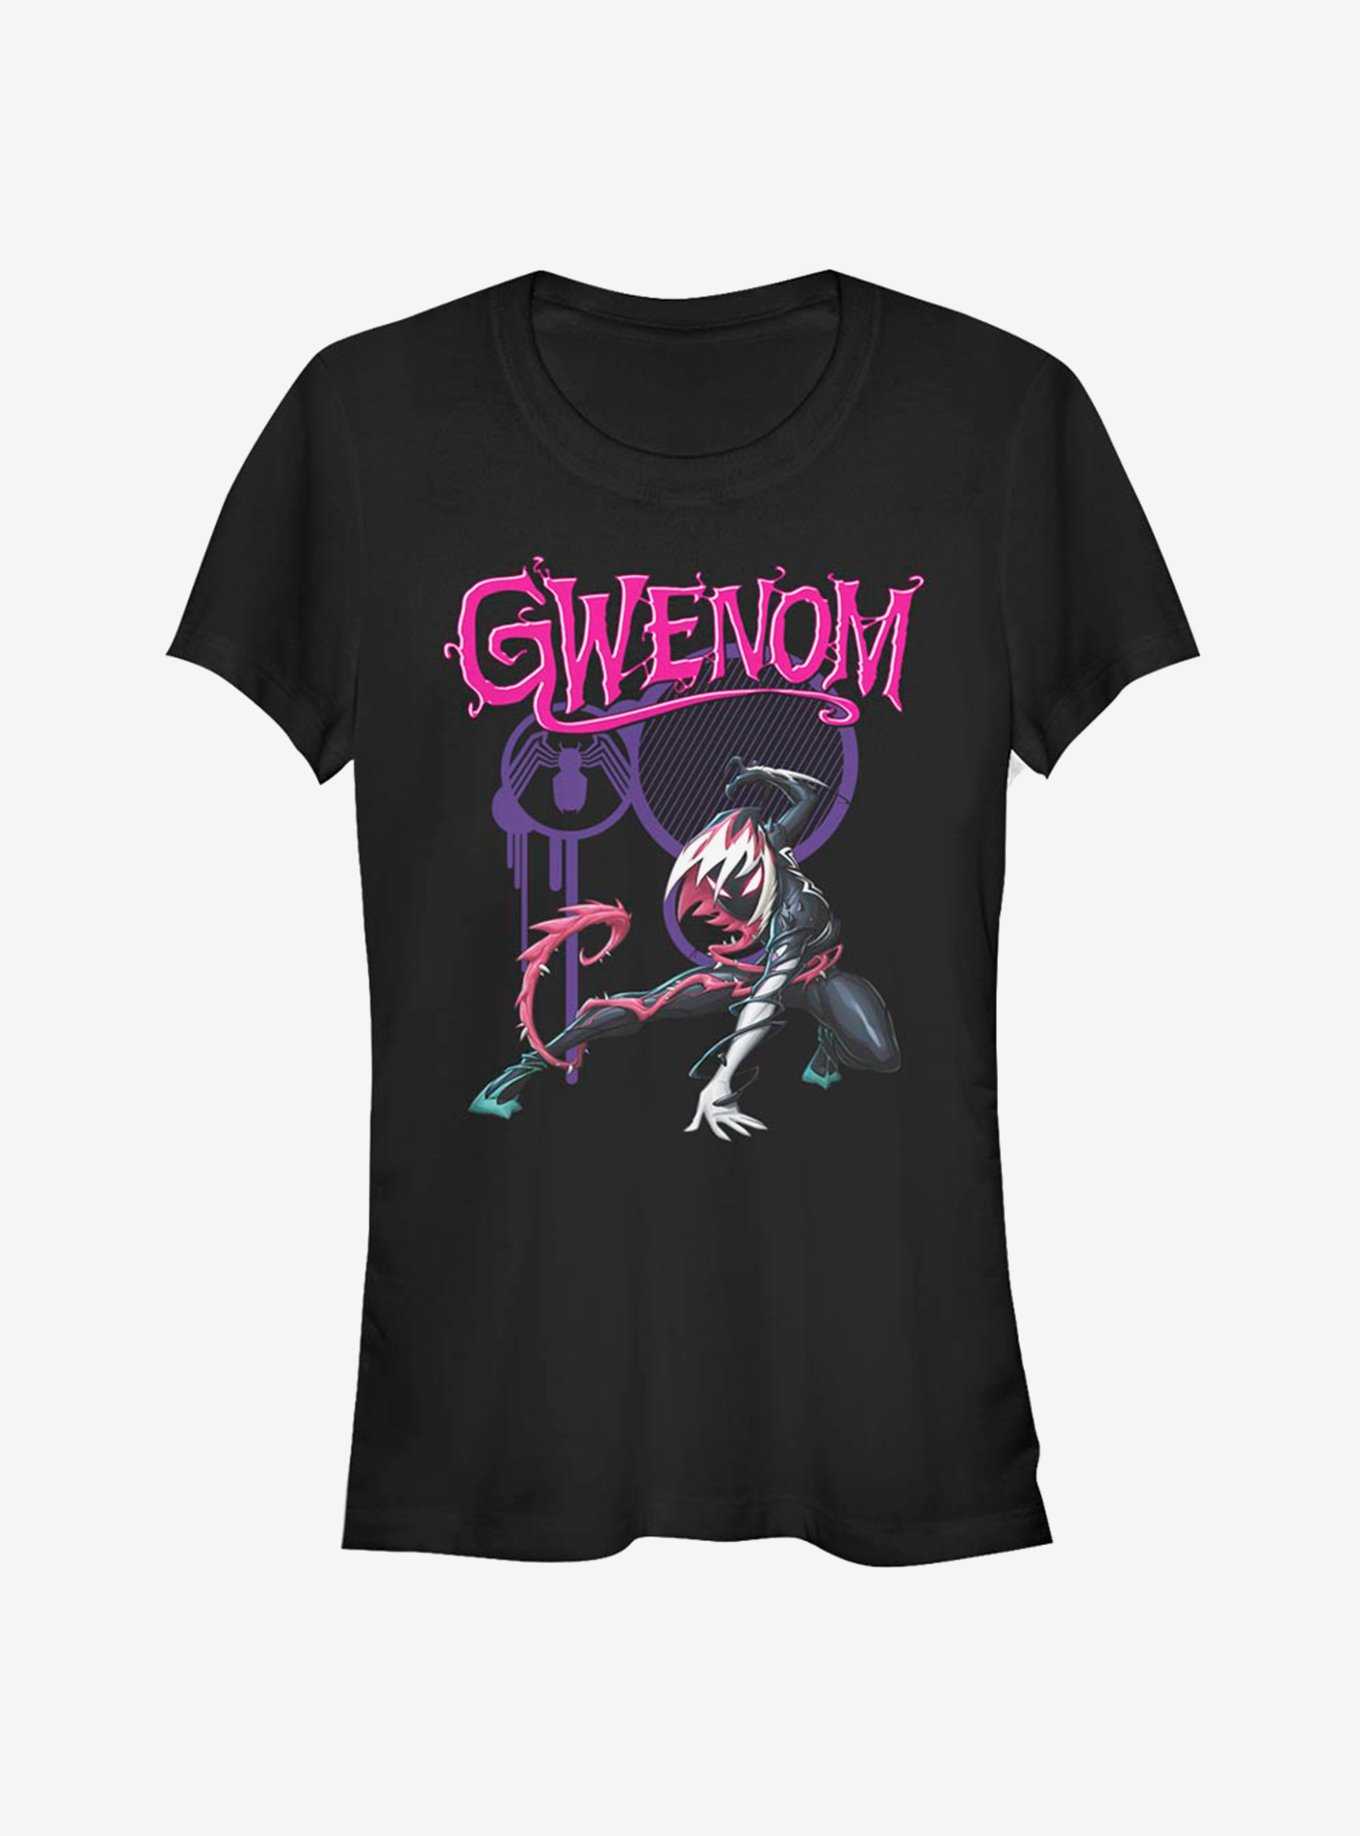 Marvel Spider-Man Gwen Stacy Venomized Gwenom T-Shirt, , hi-res